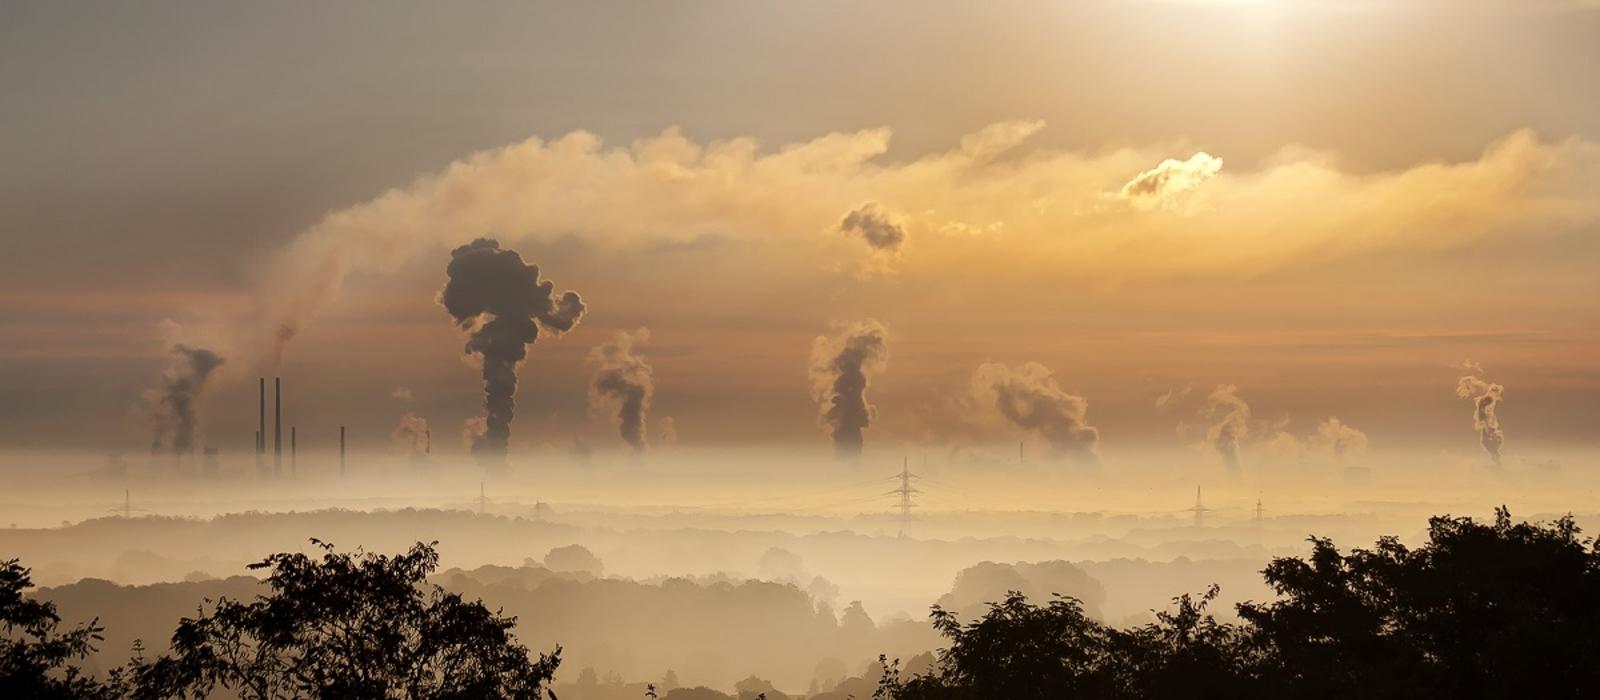 Η ΕΕ επιδιώκει τη δημιουργία ενεργειακού συστήματος με χαμηλές εκπομπές διοξειδίου του άνθρακα